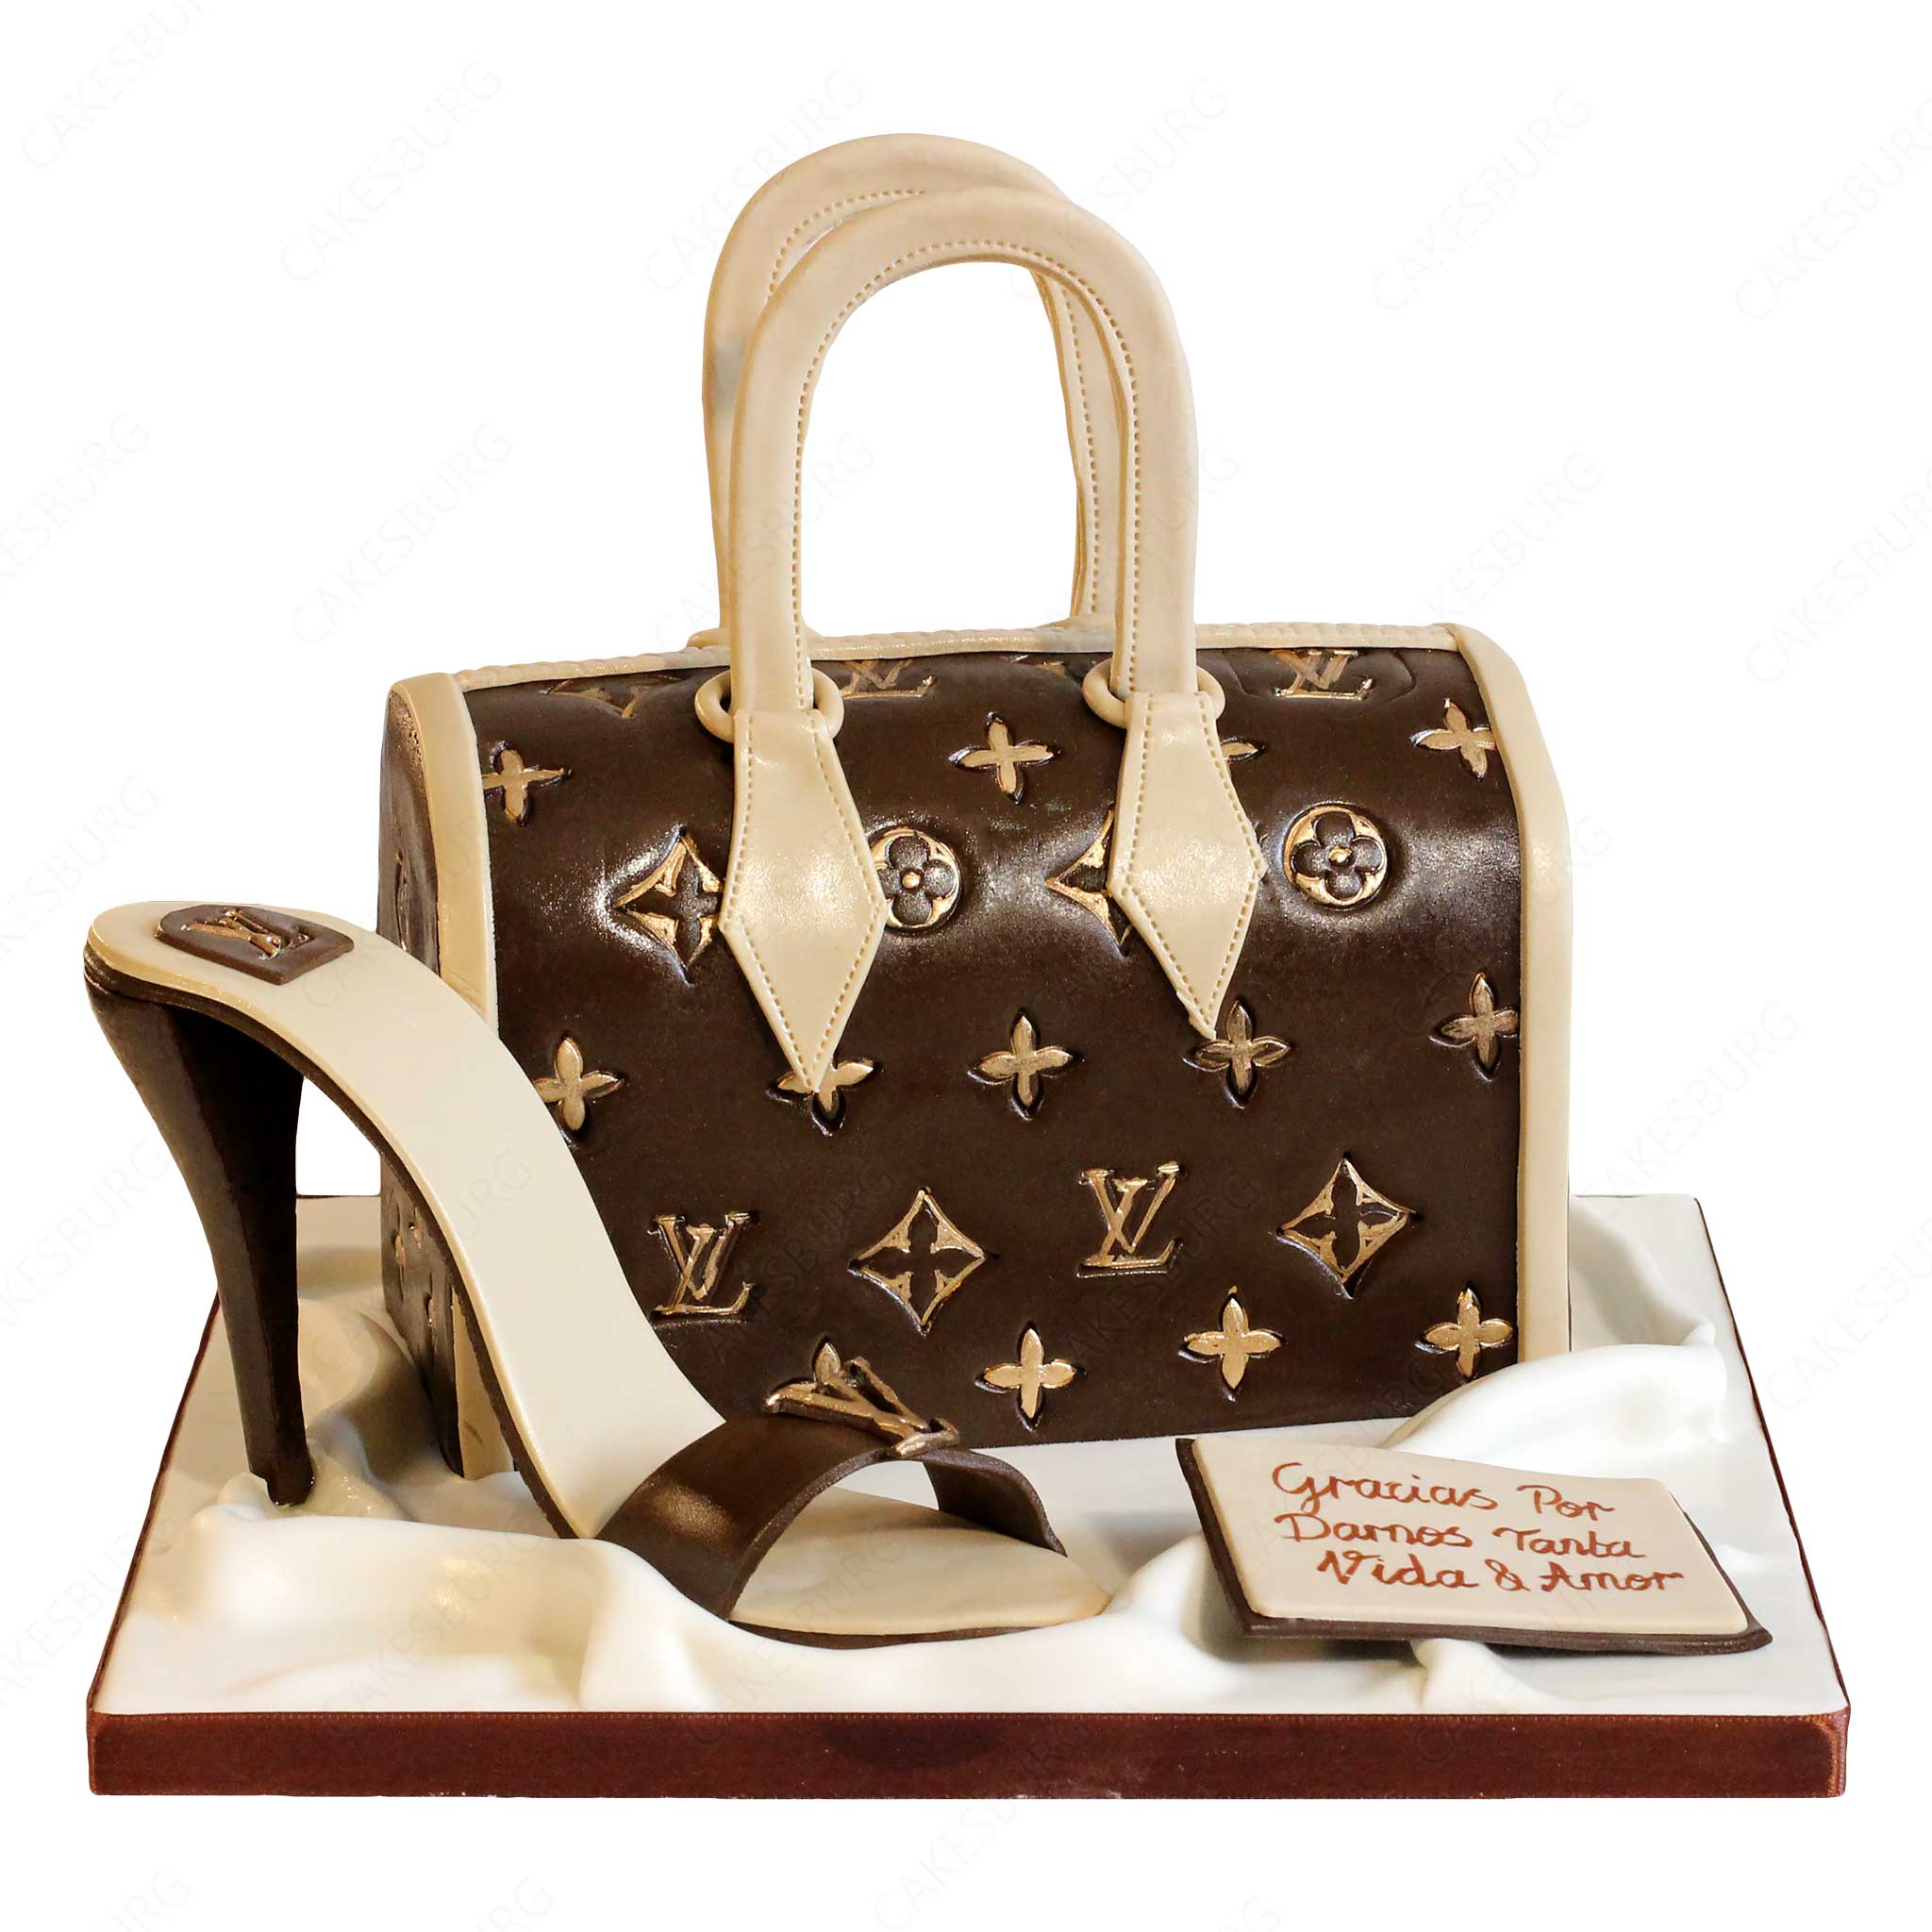 Cake Louis Vuitton 